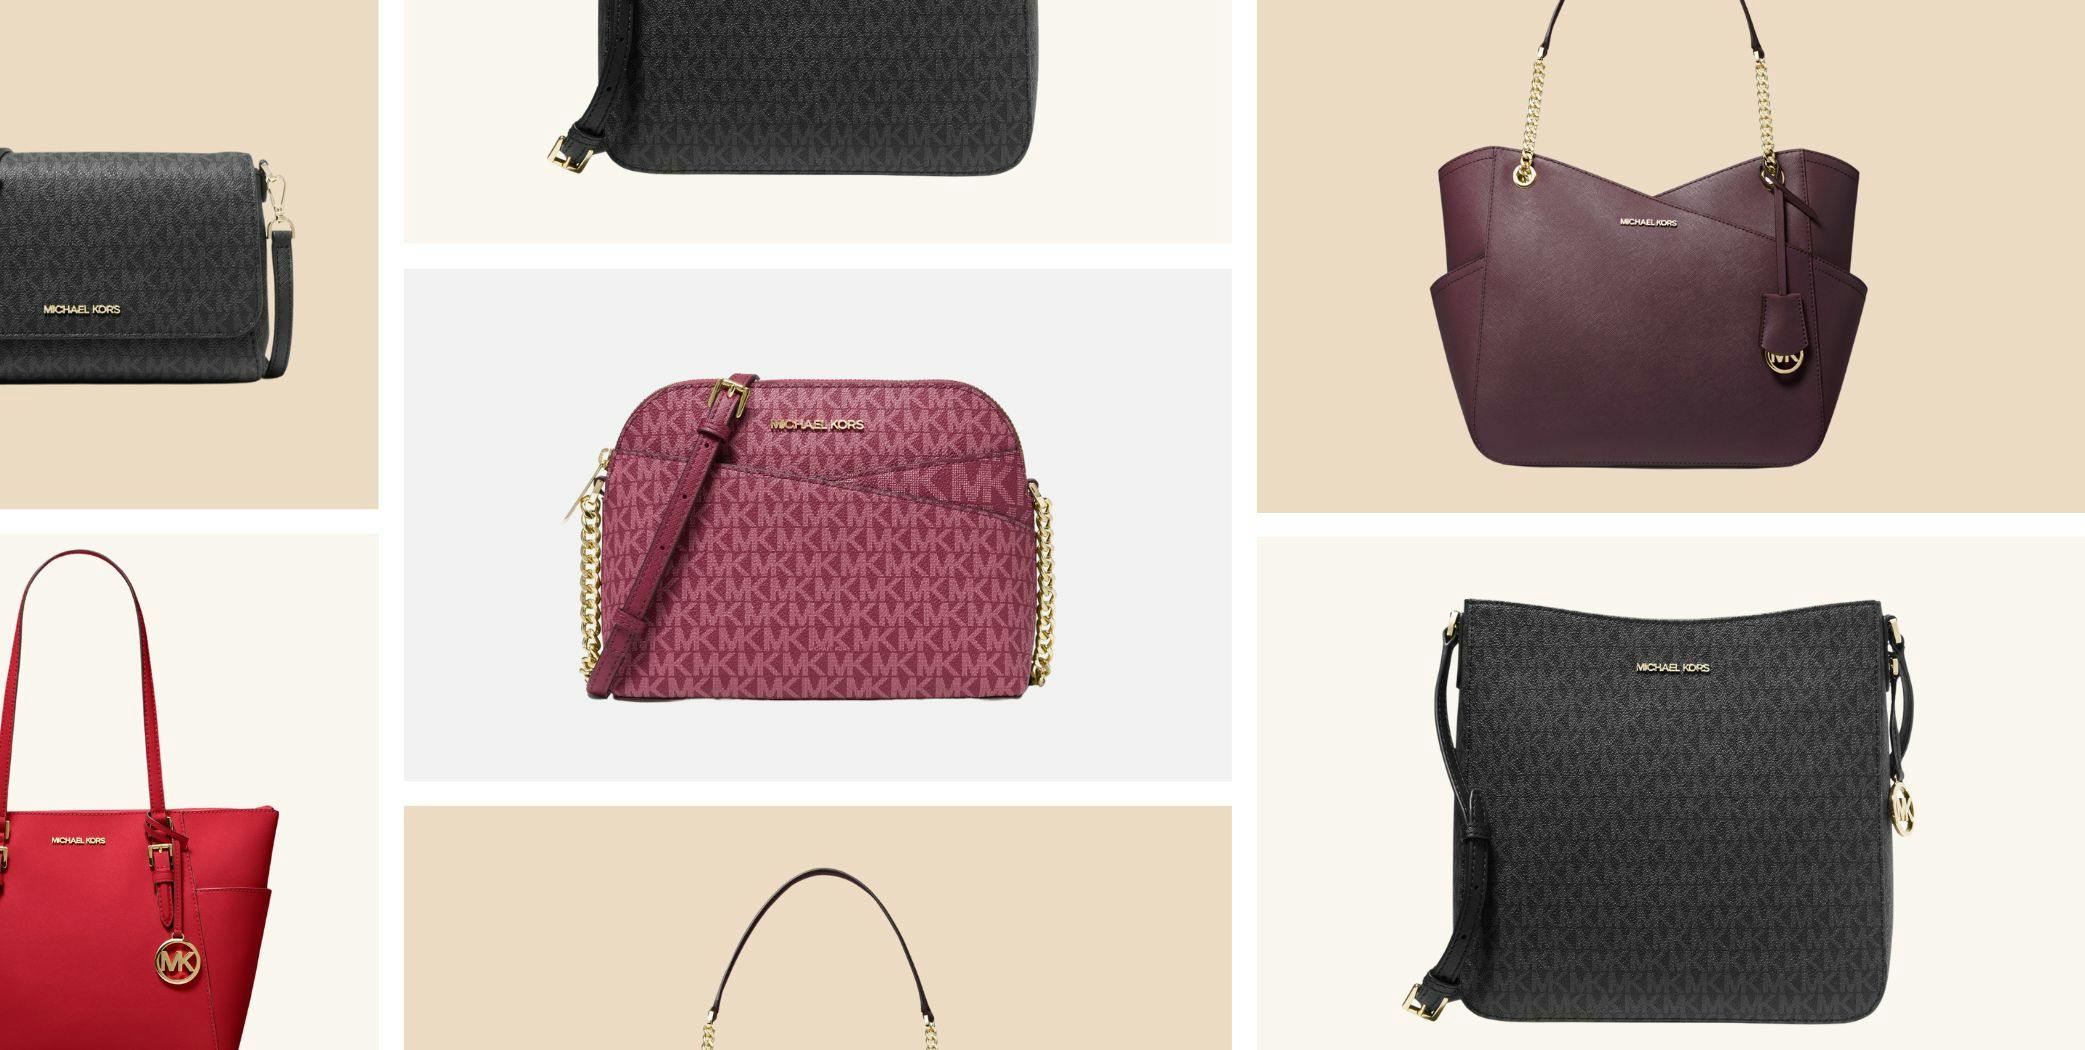 $39 Michael kors Handbags outlet,Michael Kors Bag Purses Outfits